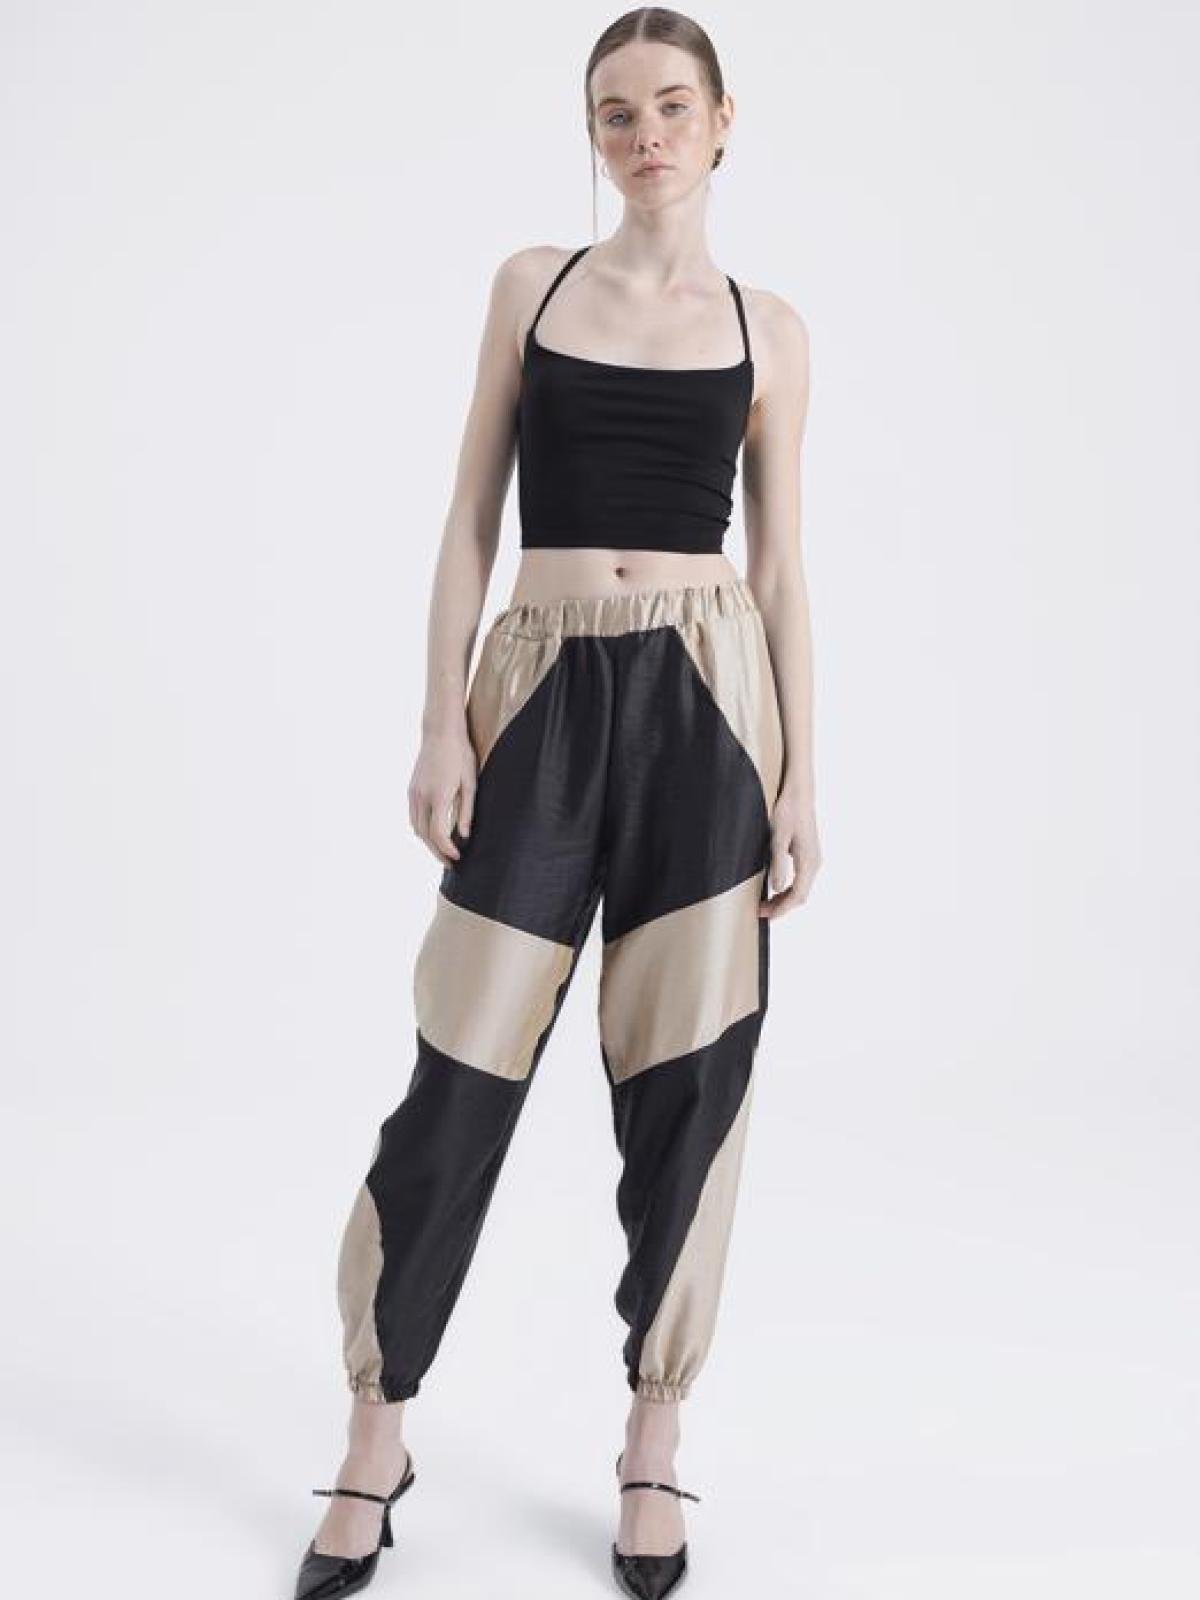 Women jogger pants wholesale Black&Beige color - wholesale clothing